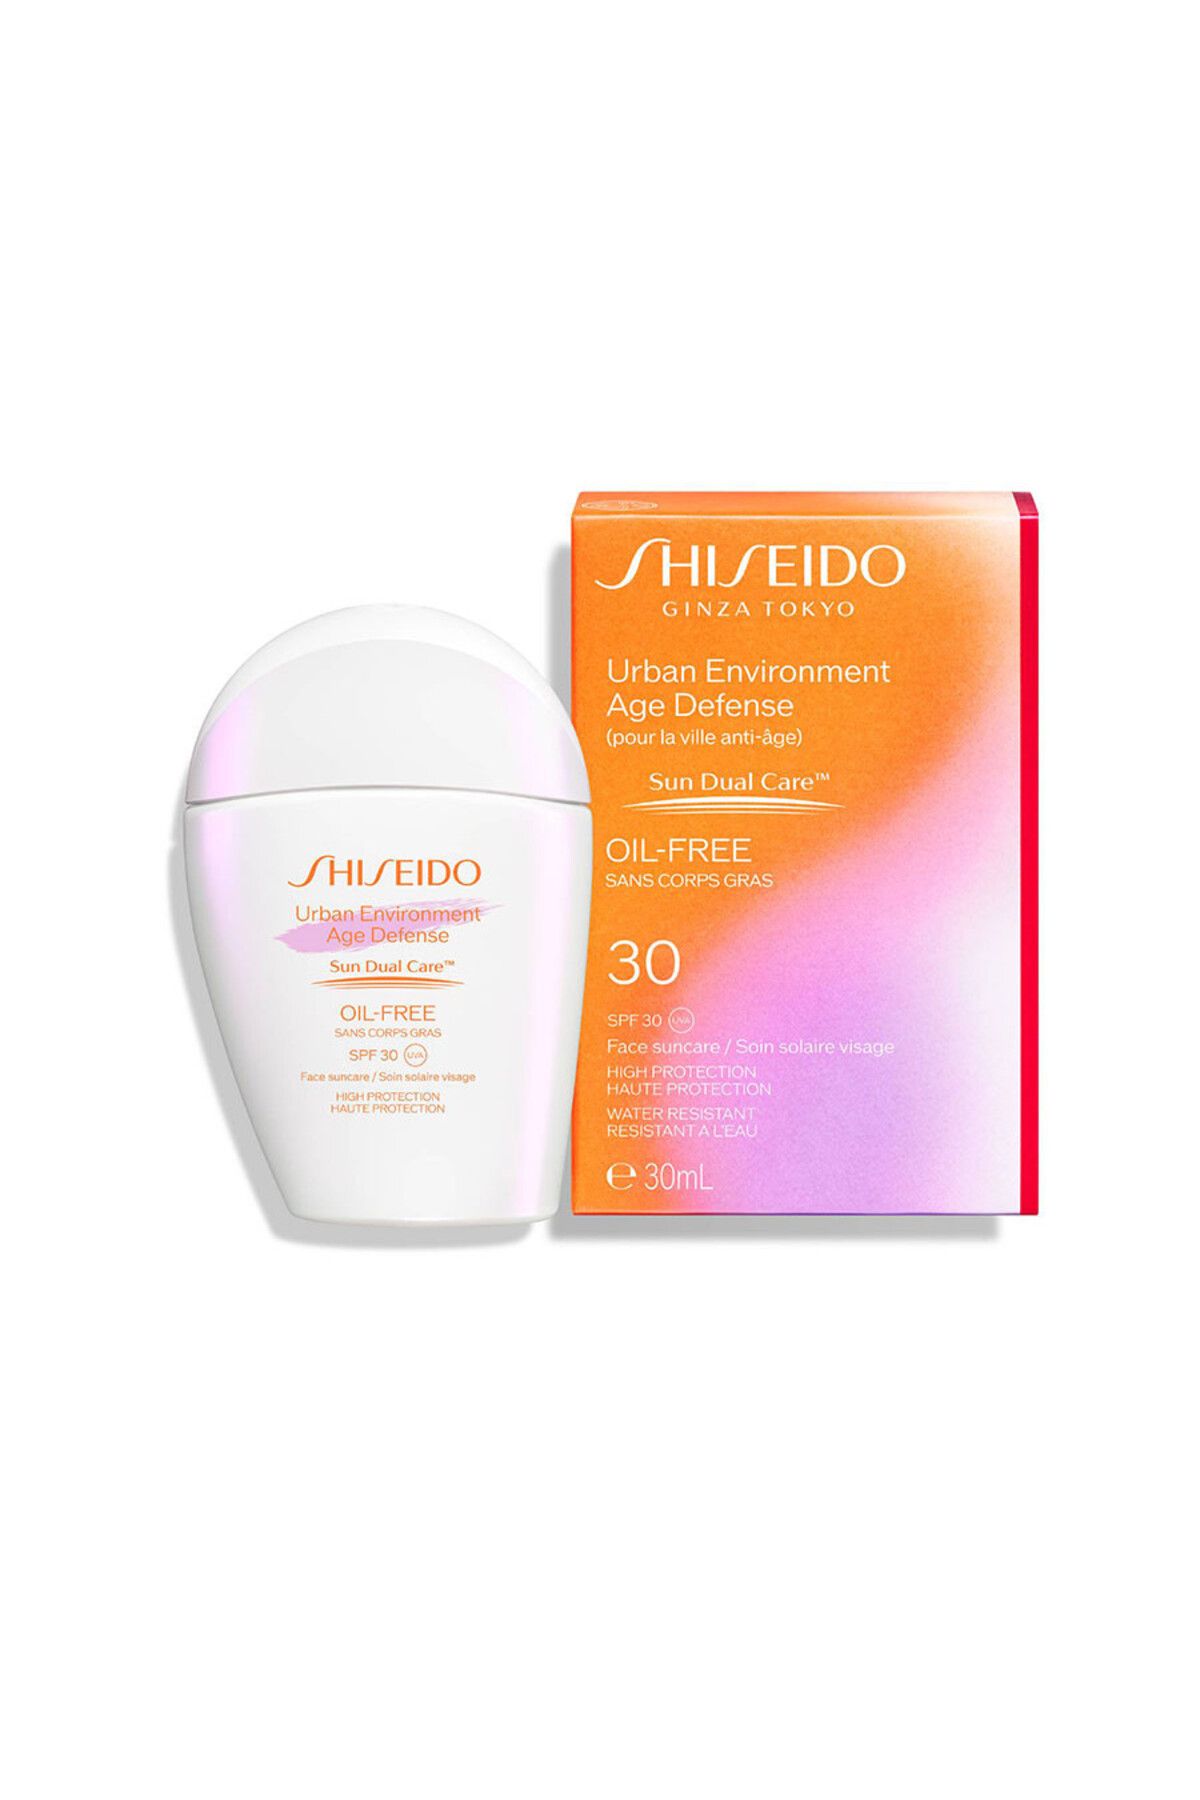 Shiseido UV IŞINLARINDAN KORUYAN, YAŞLANMAYA KARŞI SAVUNMAYI ARTIRAN SPF30 GÜNEŞ KREMİ 30ML